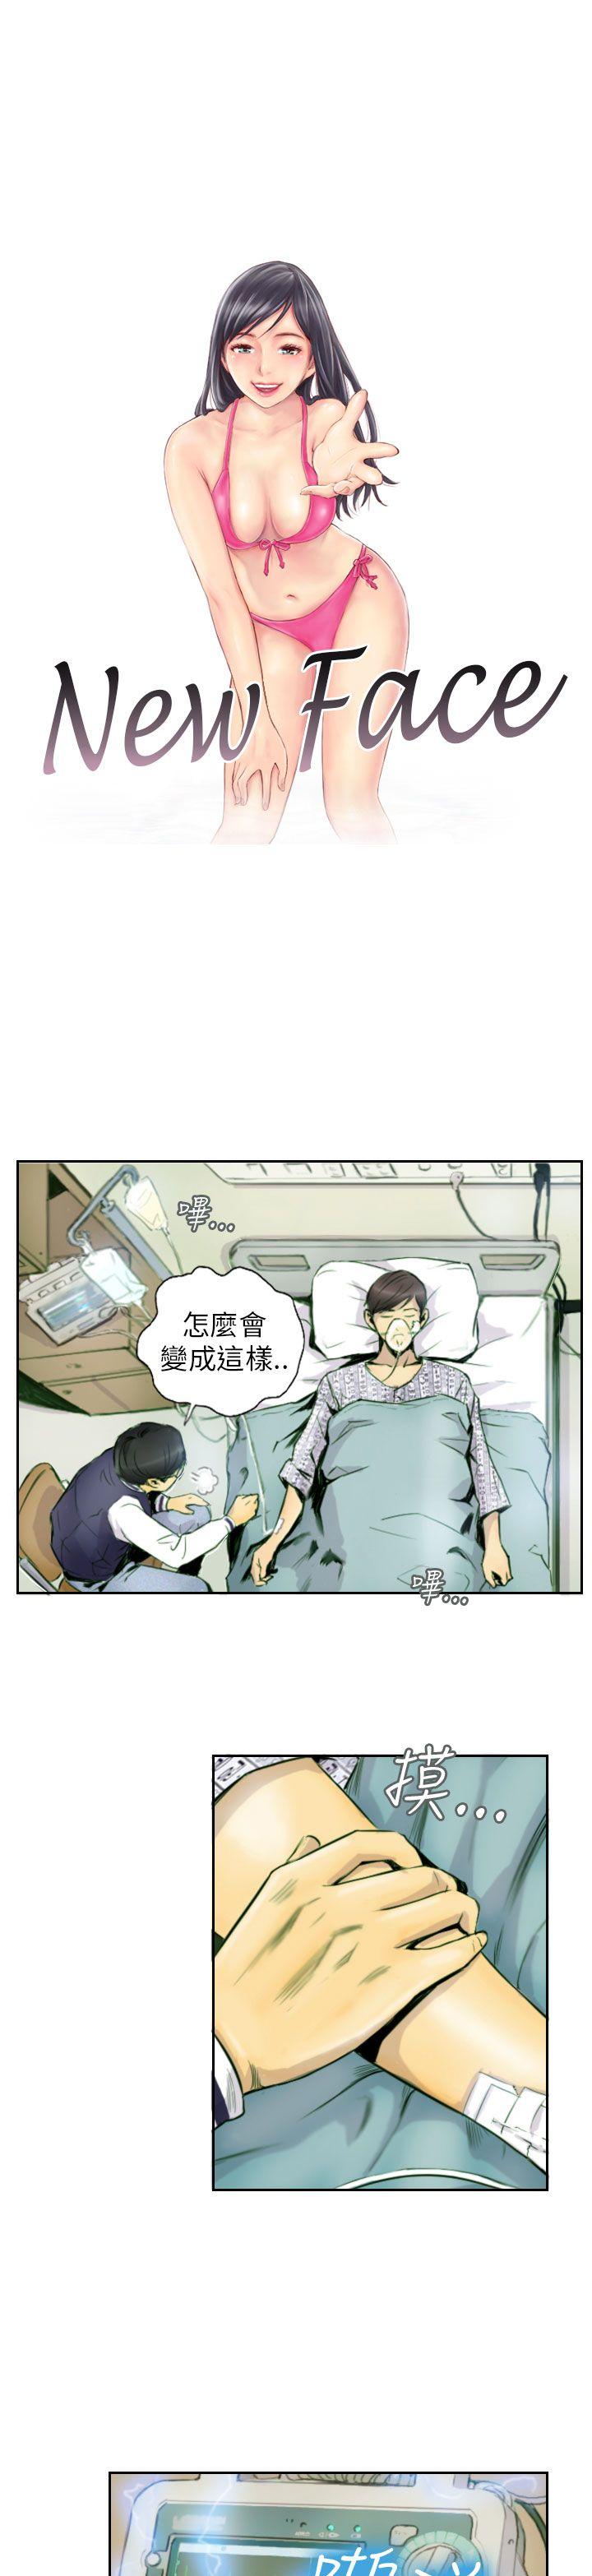 韩国污漫画 NEW FACE 第2话 1